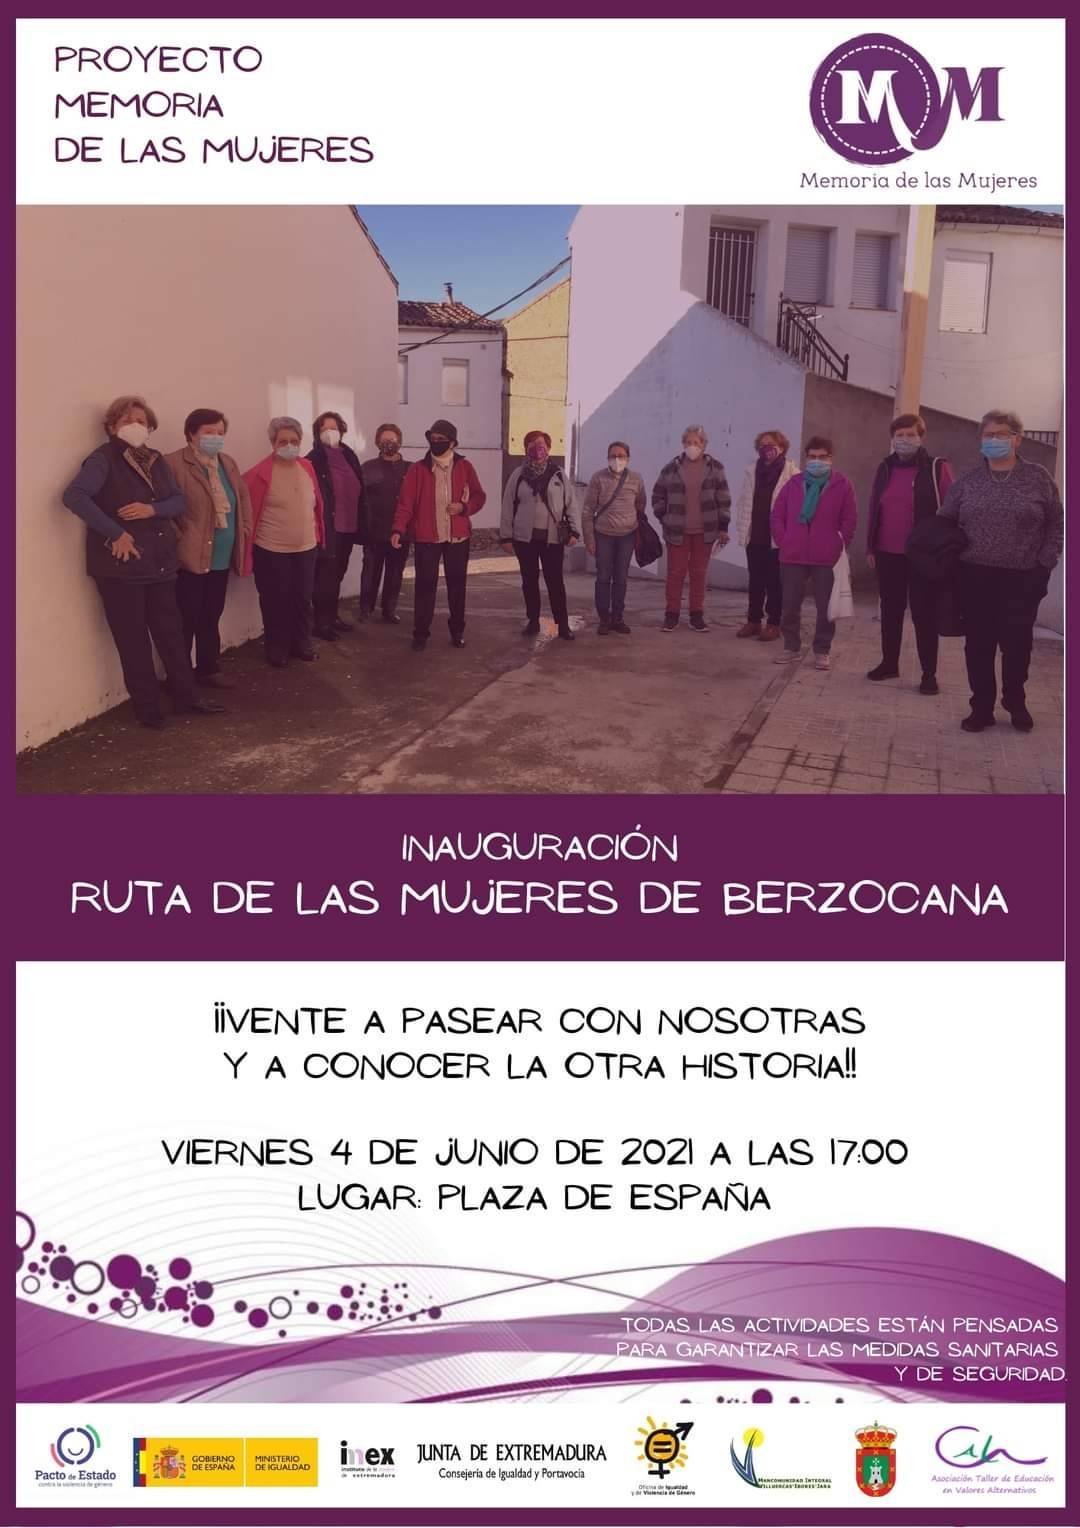 Inauguración de la ruta de las mujeres (2021) - Berzocana (Cáceres)